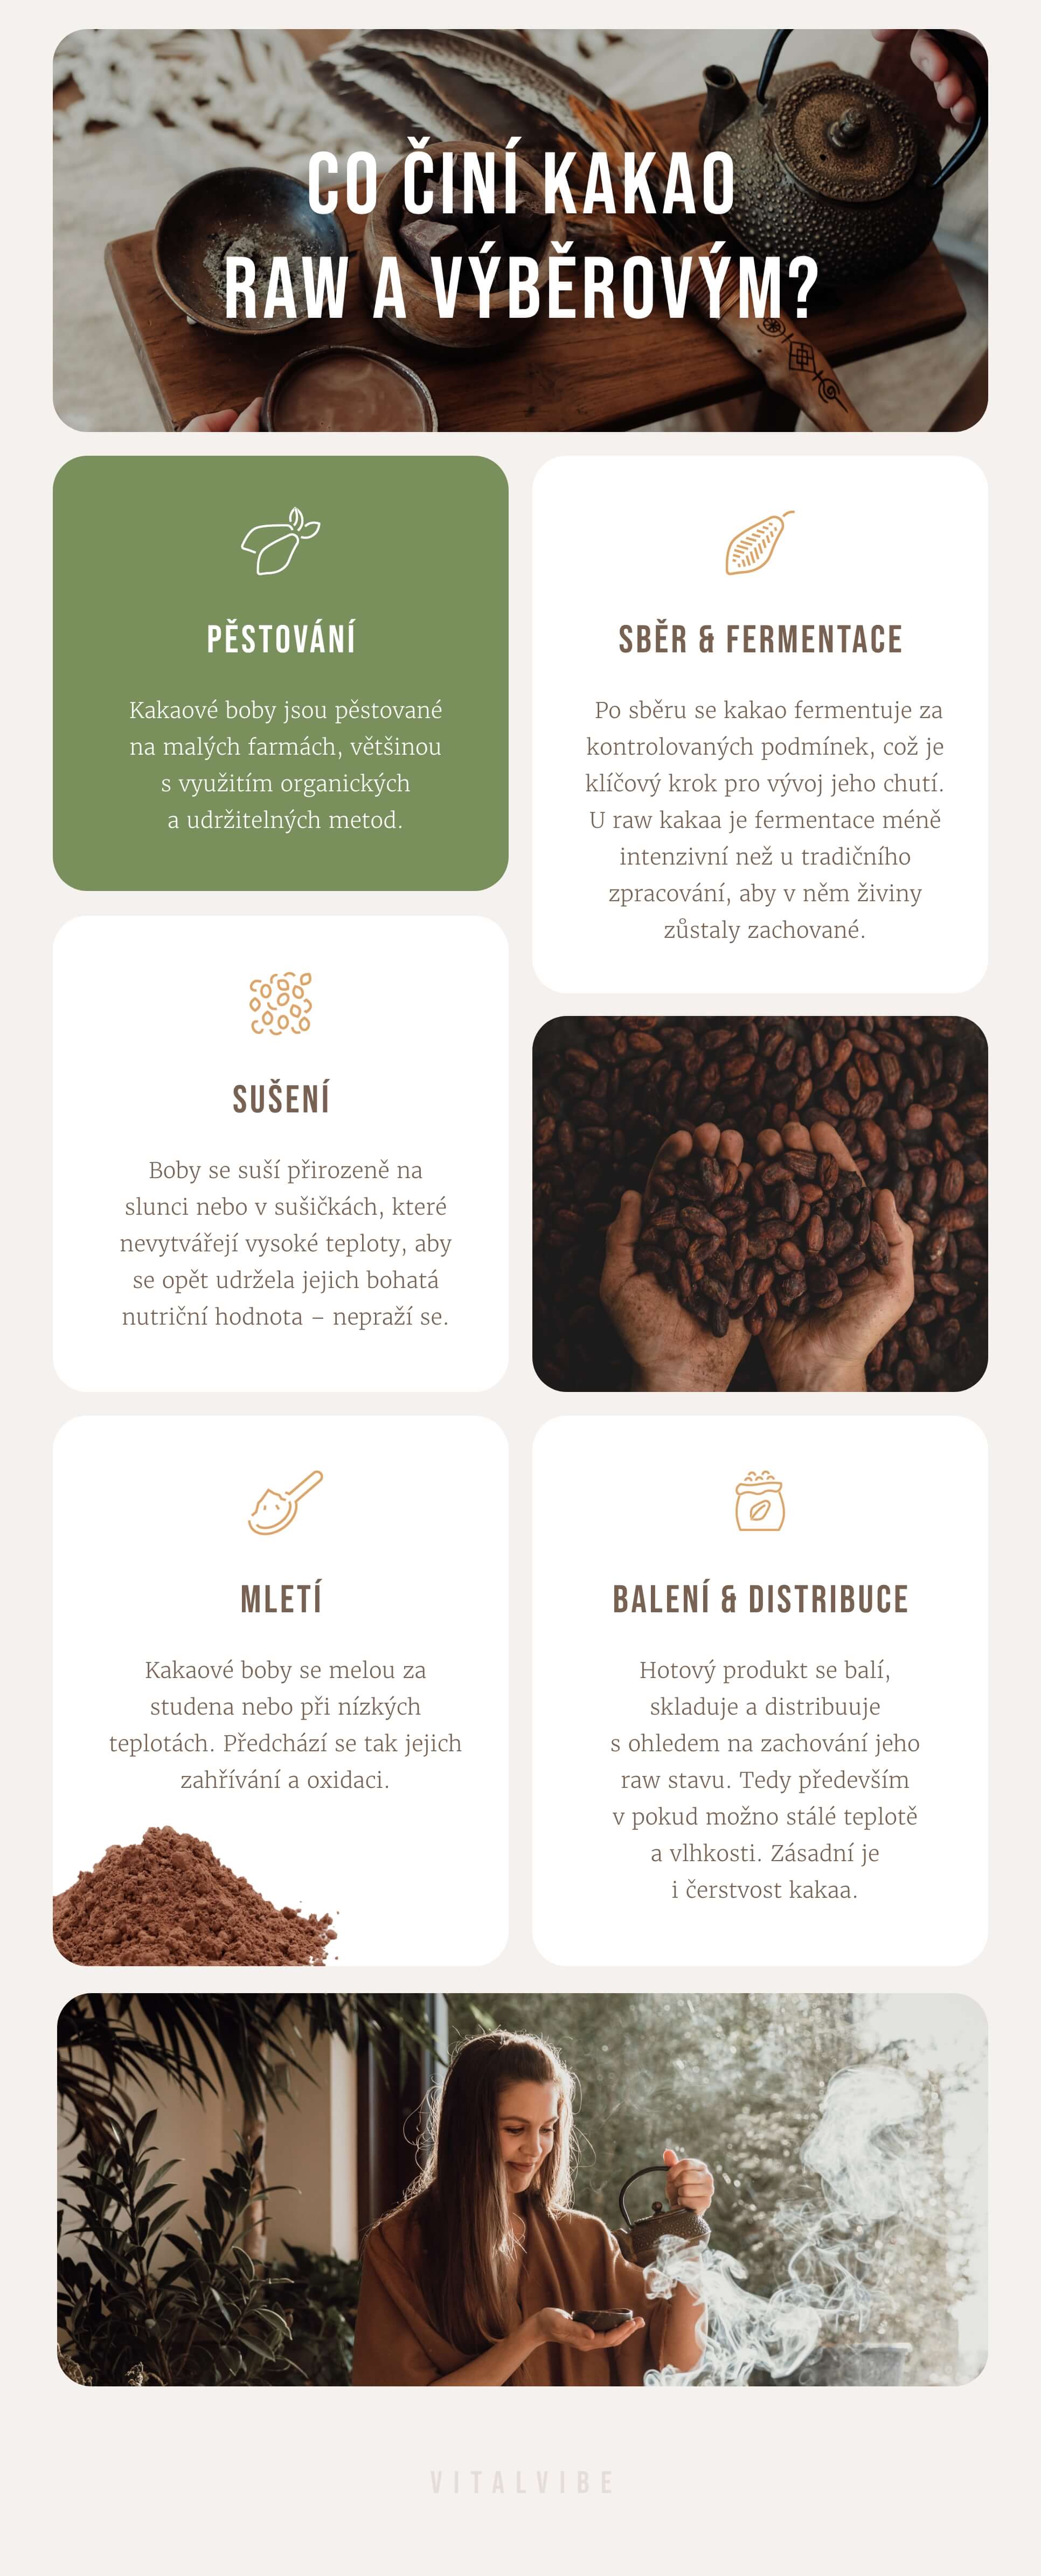 Co činí kakao raw a výběrovým?